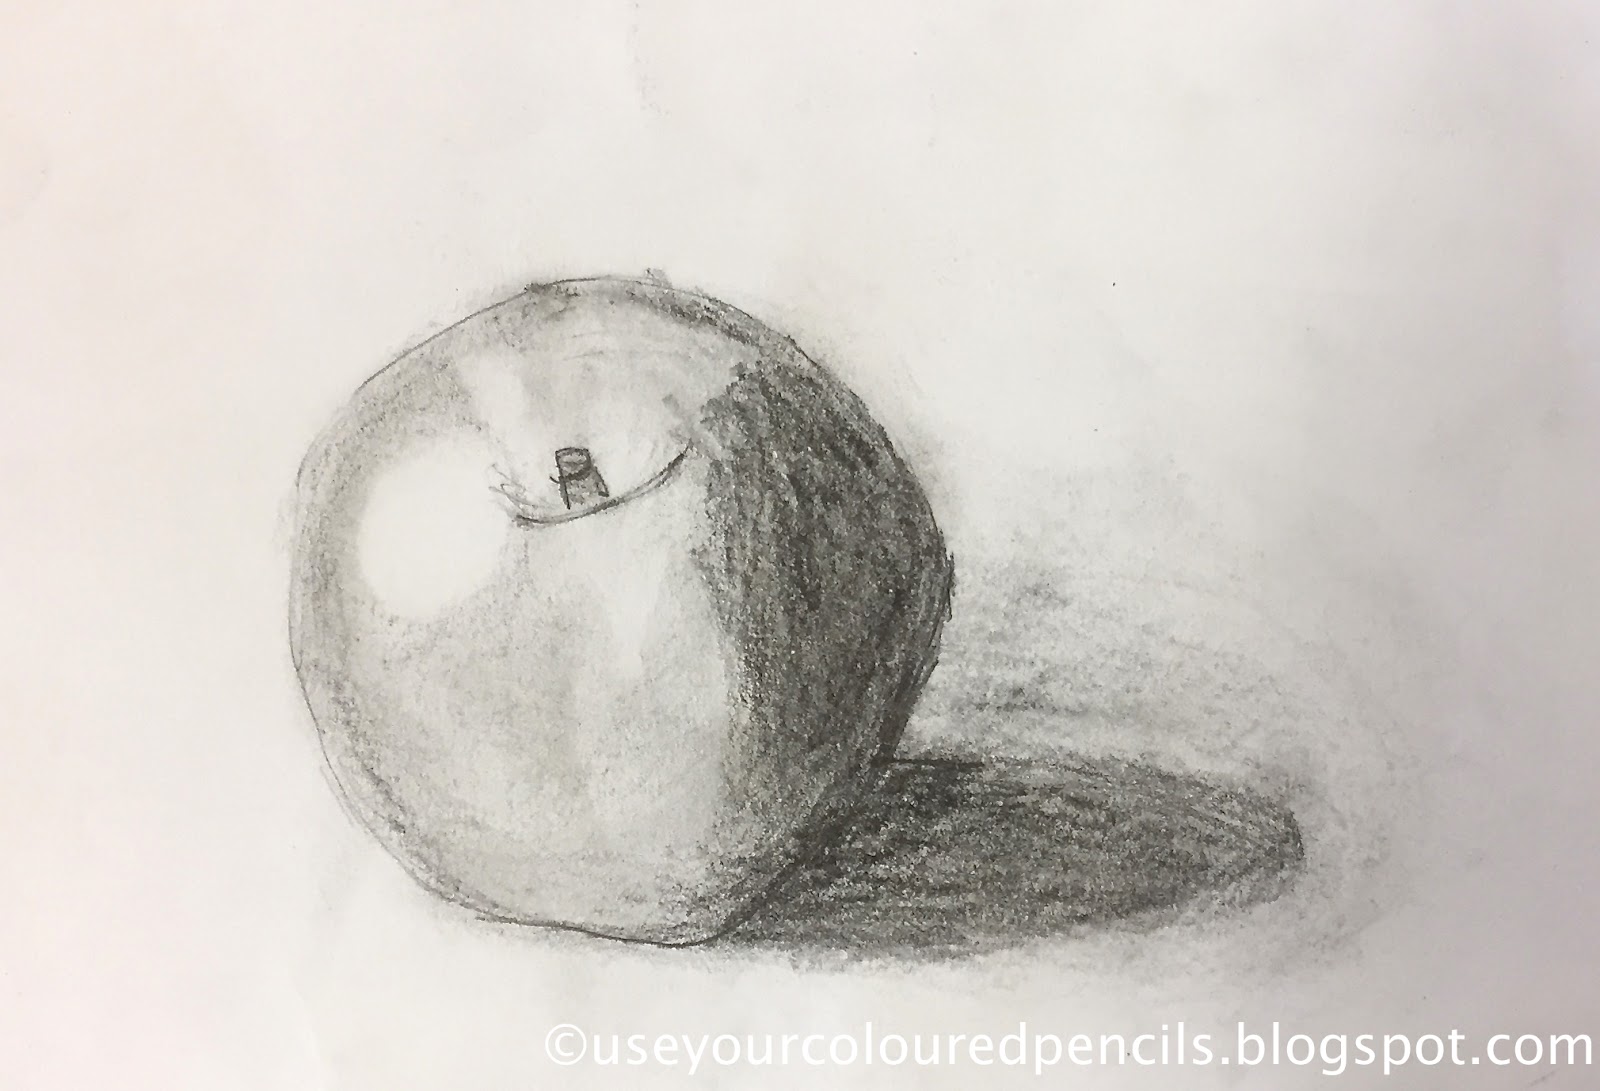 Академический рисунок яблока по граням